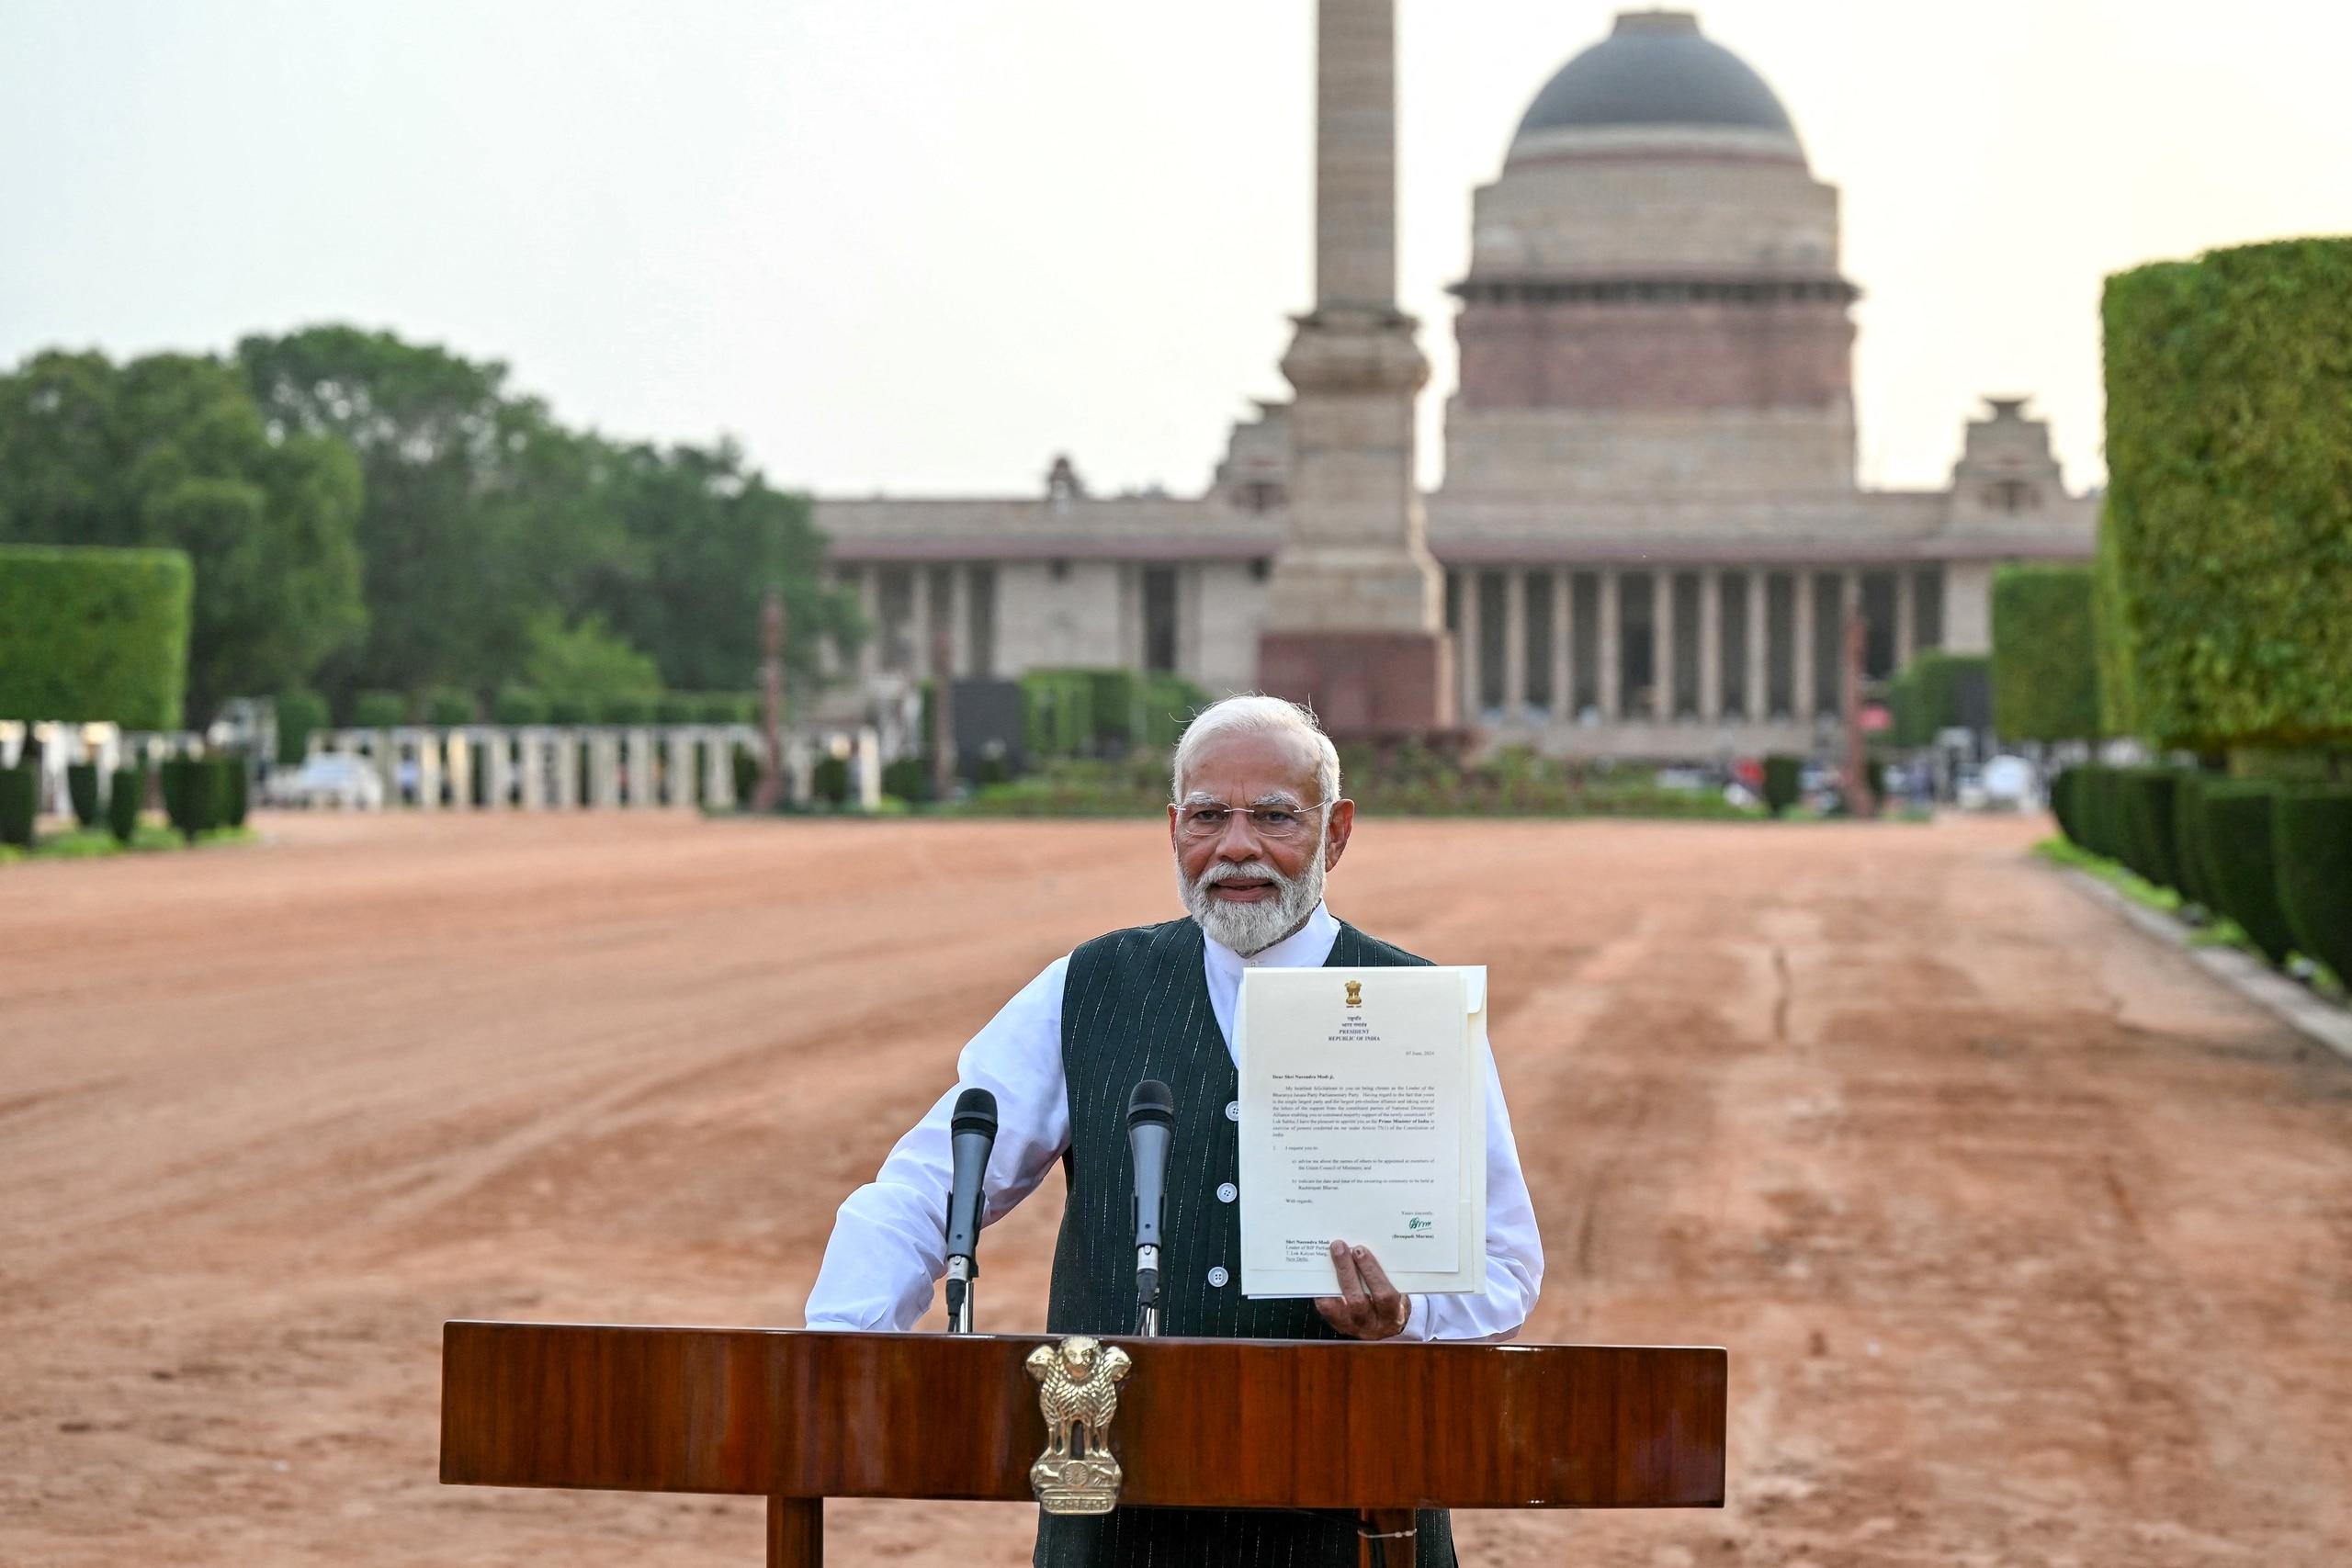 An ninh nhiều lớp cho lễ nhậm chức của Thủ tướng Ấn Độ- Ảnh 1.